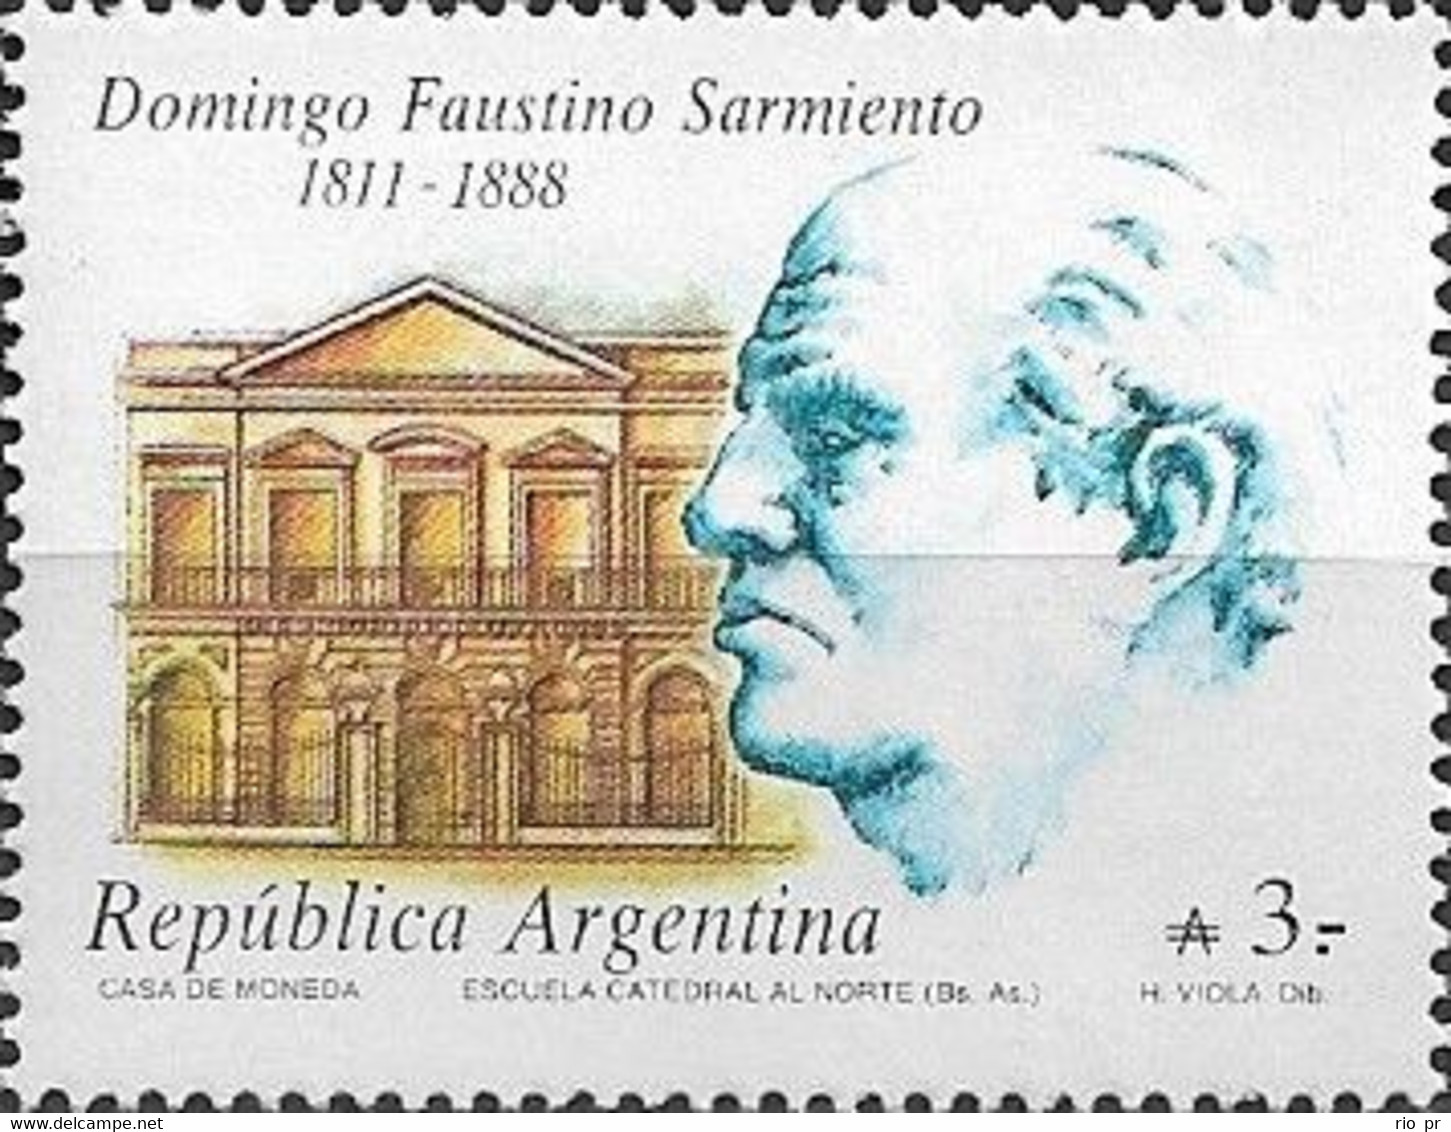 ARGENTINA - DEATH CENTENARY OF DOMINGO FAUSTINO SARMIENTO (1811-1888), ARGENTINE ACTIVIST/STATESMAN 1988 - MNH - Ungebraucht